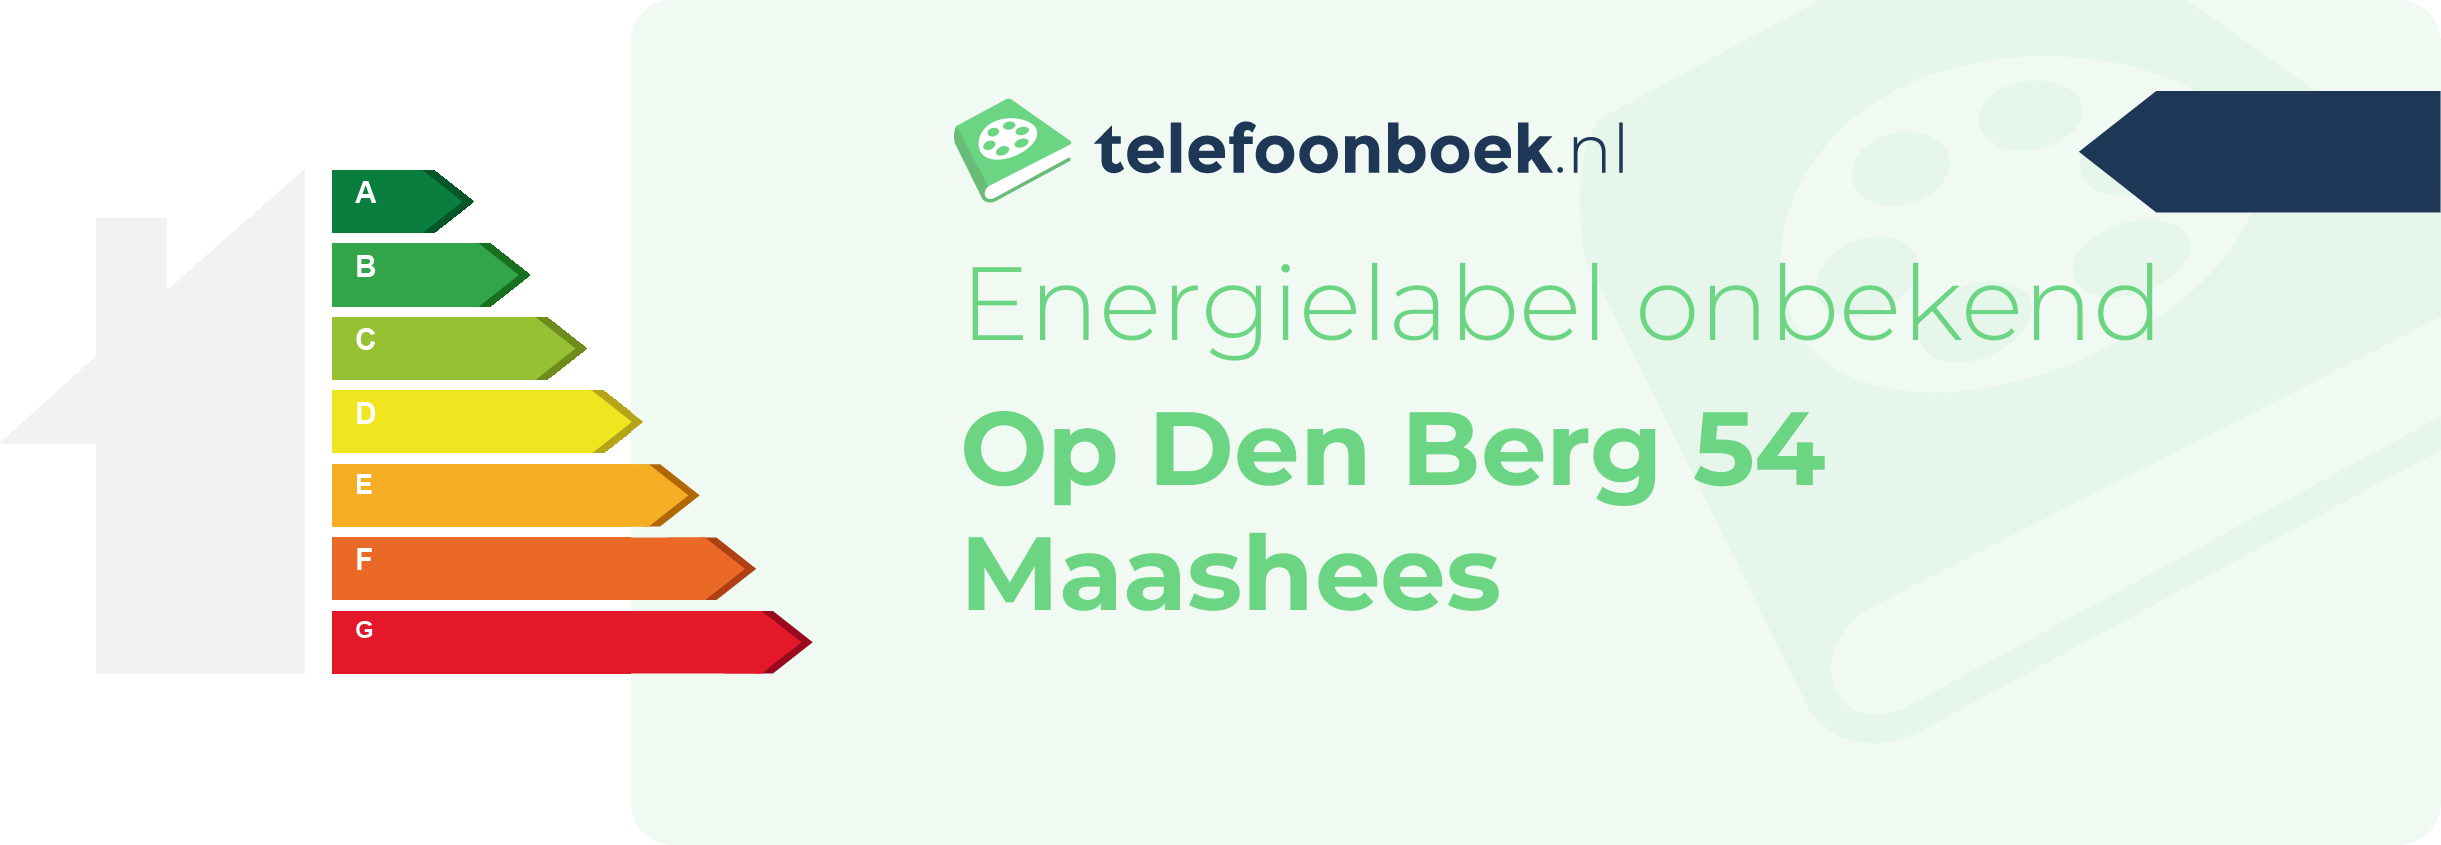 Energielabel Op Den Berg 54 Maashees